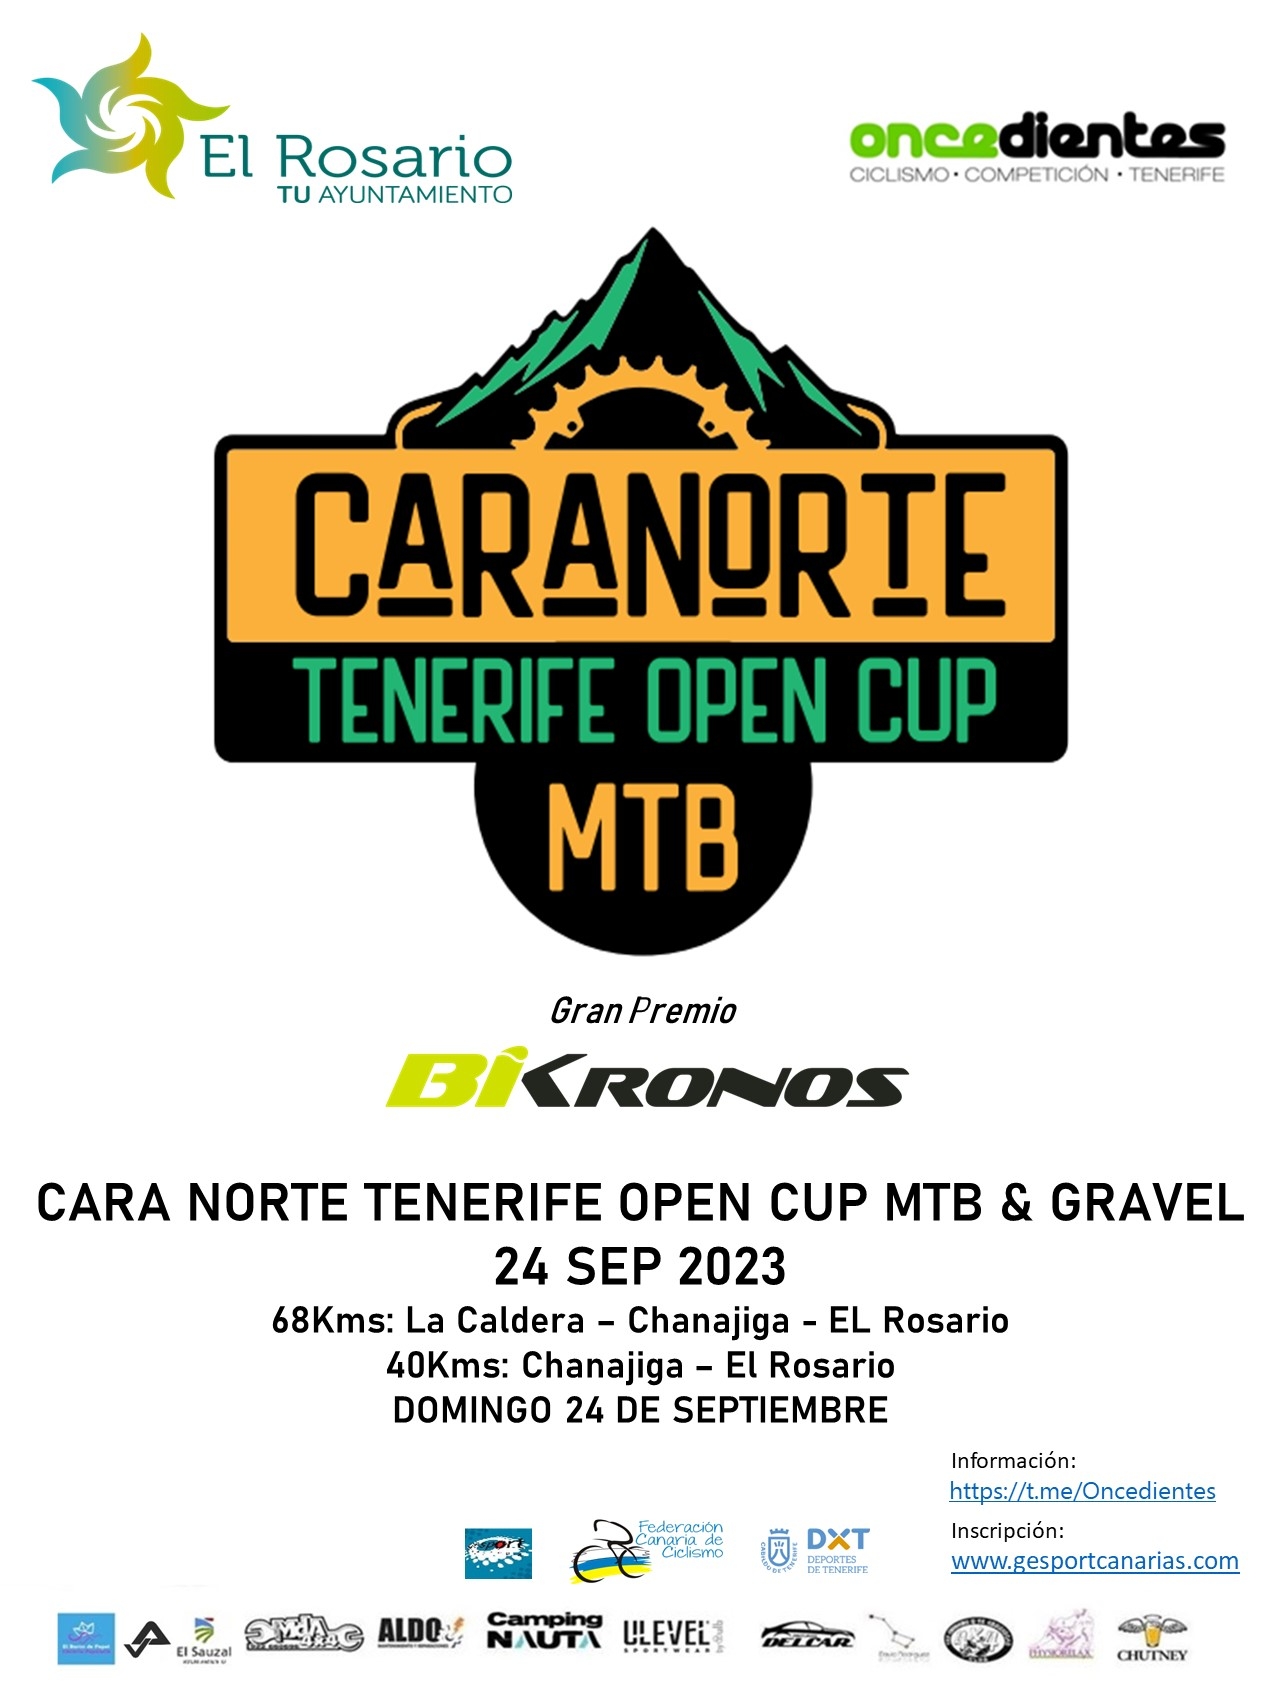 CARA NORTE TENERIFE OPEN CUP 2023 - Register